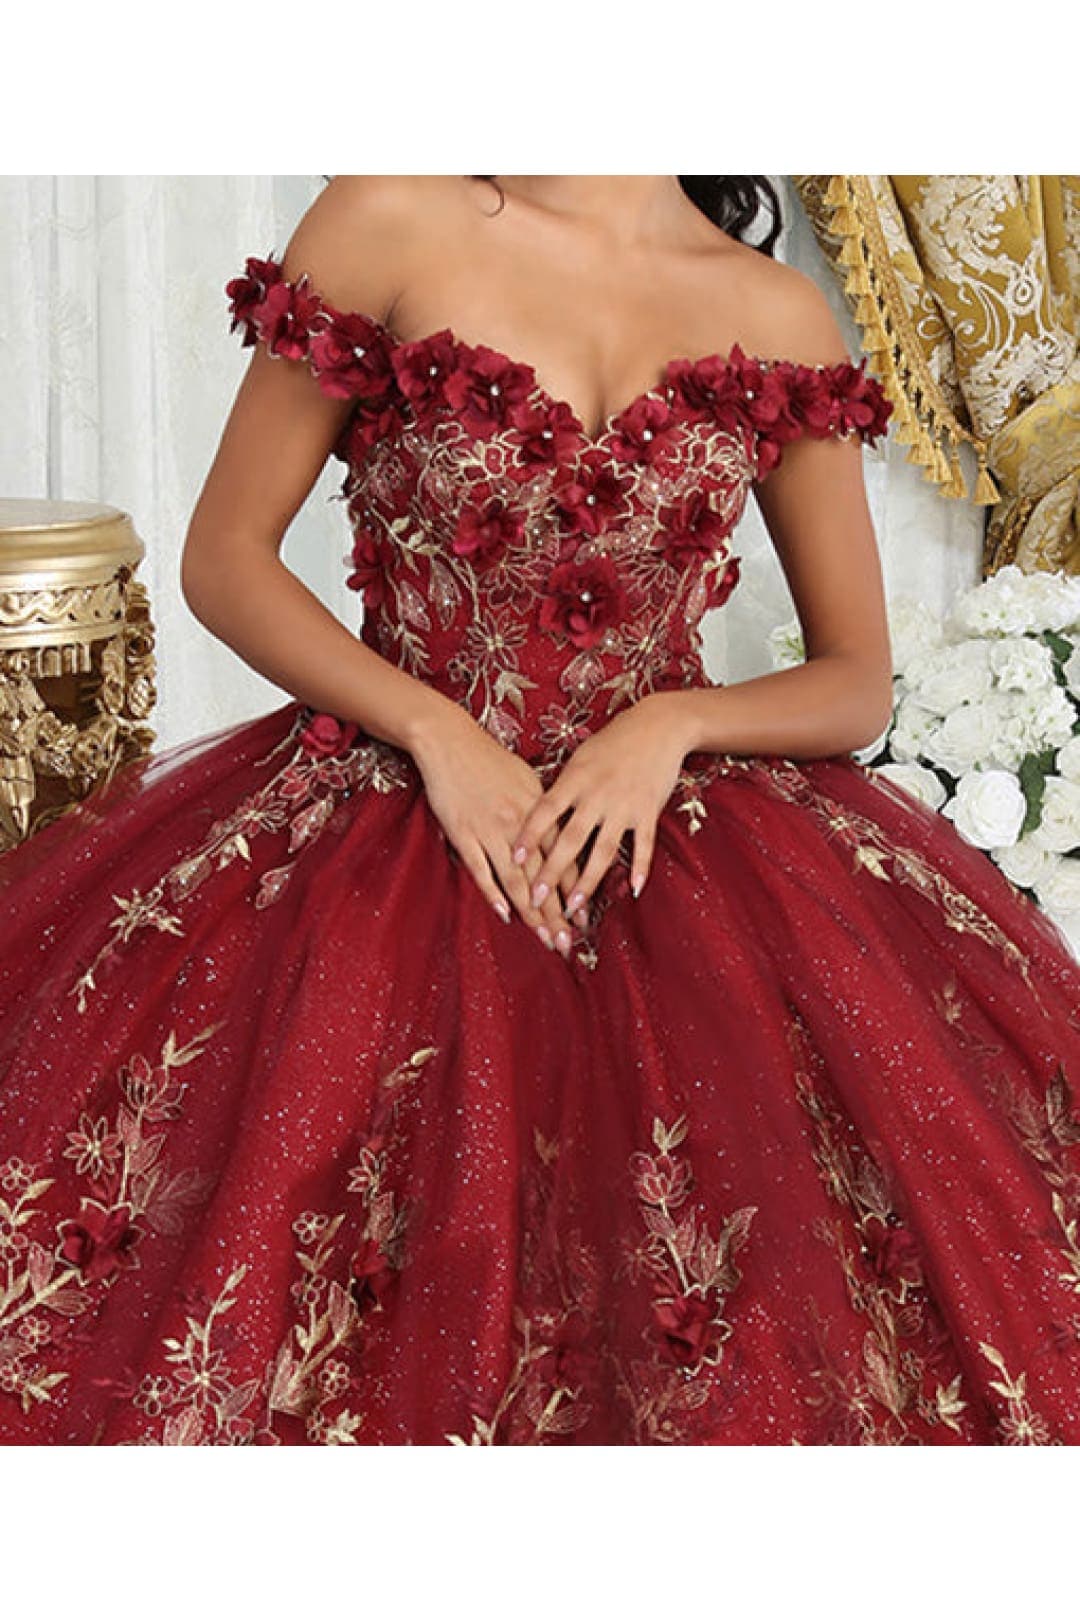 Layla K LK215 Off Shoulder 3D Floral Applique Glitter Quince Dress - Dress